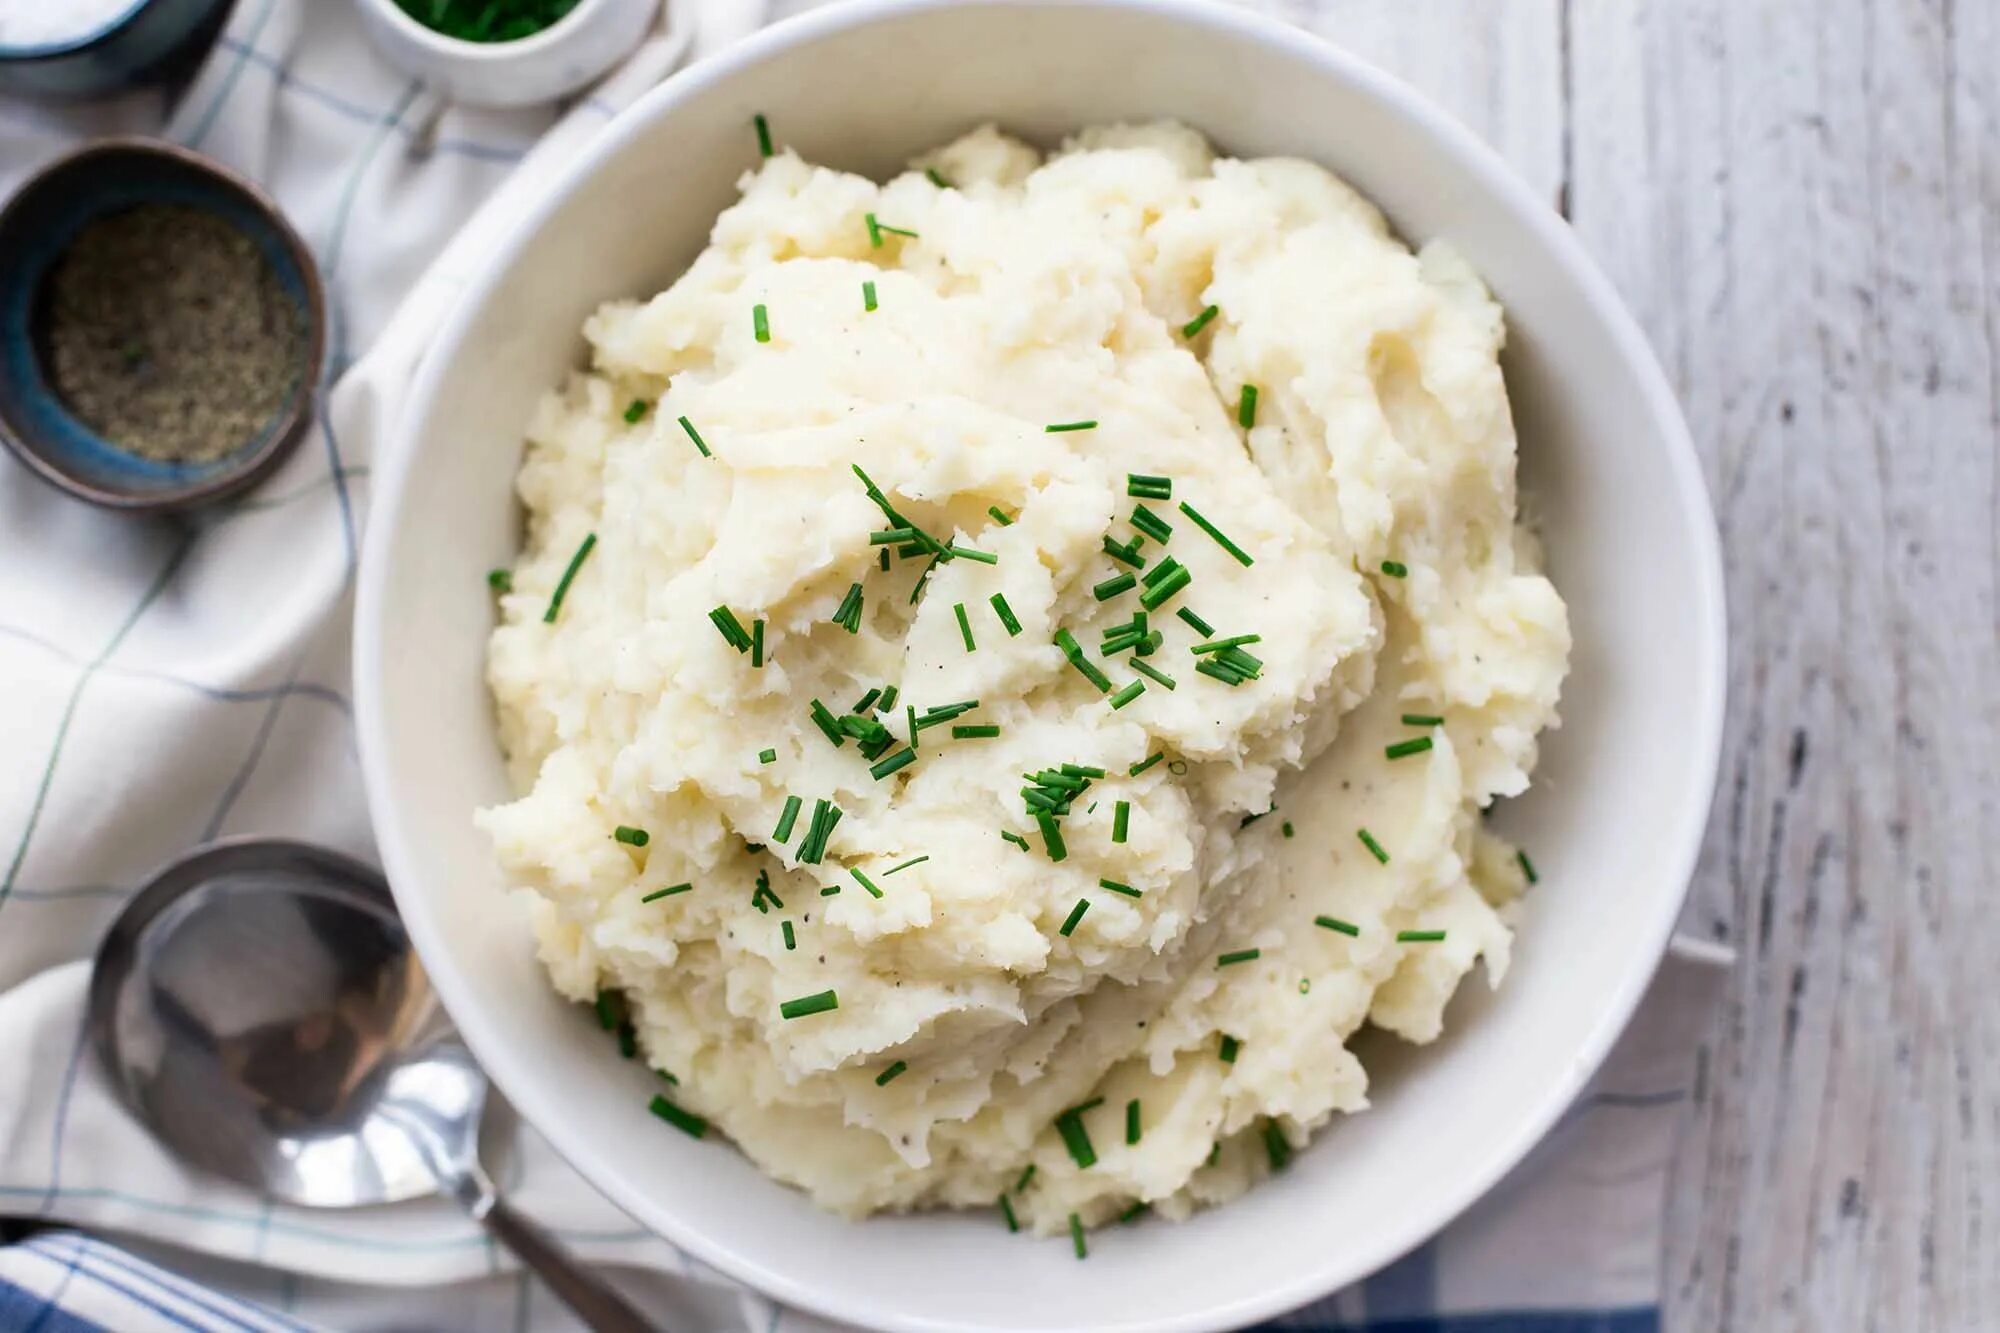 Rice potato. Mashed картофель. Толчонка. Garlic Mashed Potatoes Recipe. Lumpy Mashed Potatoes.